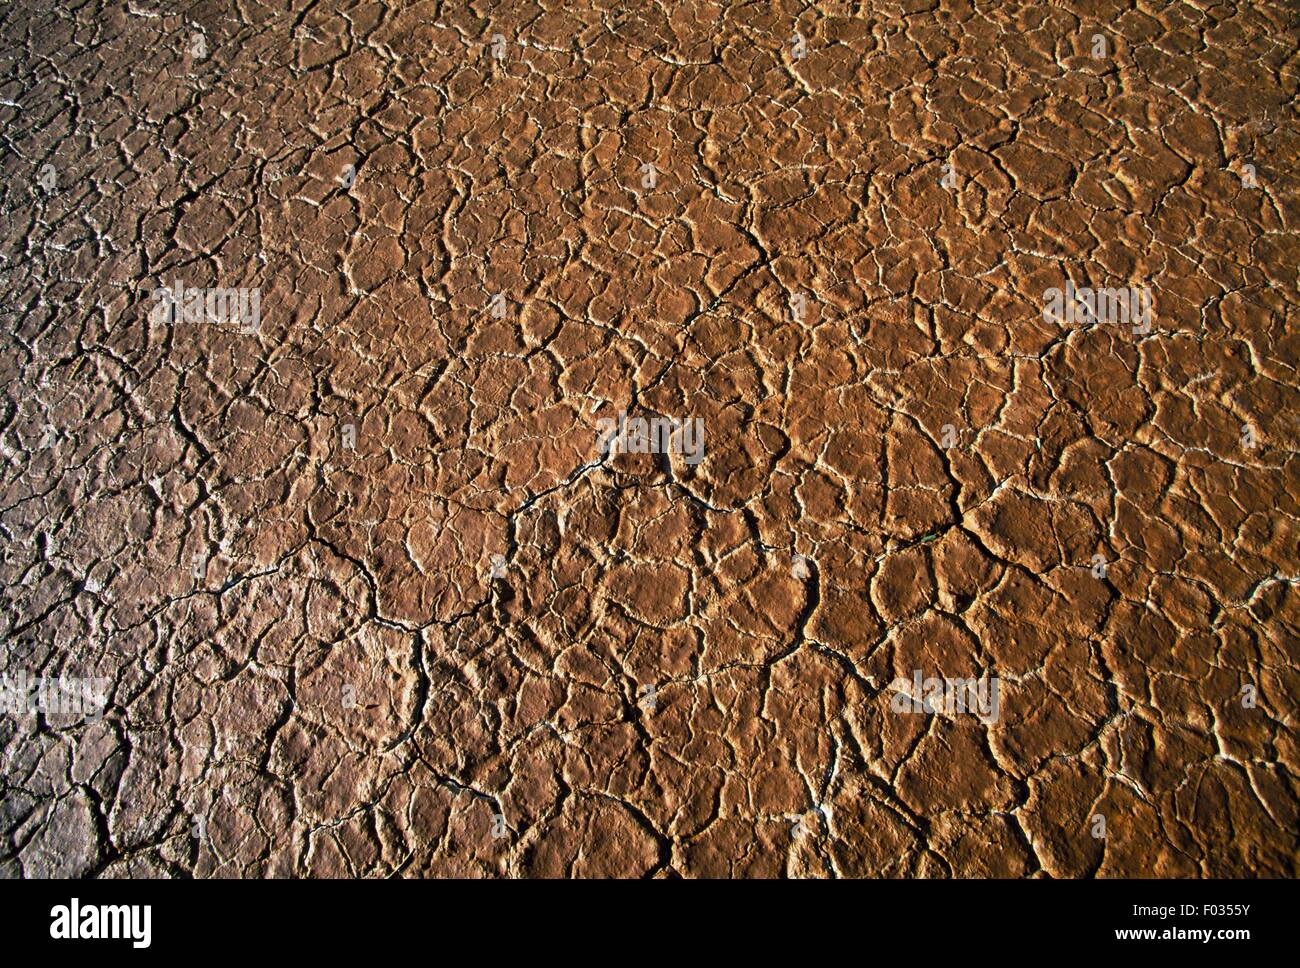 Effets de la sécheresse sur le fond d'un étang asséché, désert de Sonora, près de Tucson, Arizona, United States. Banque D'Images